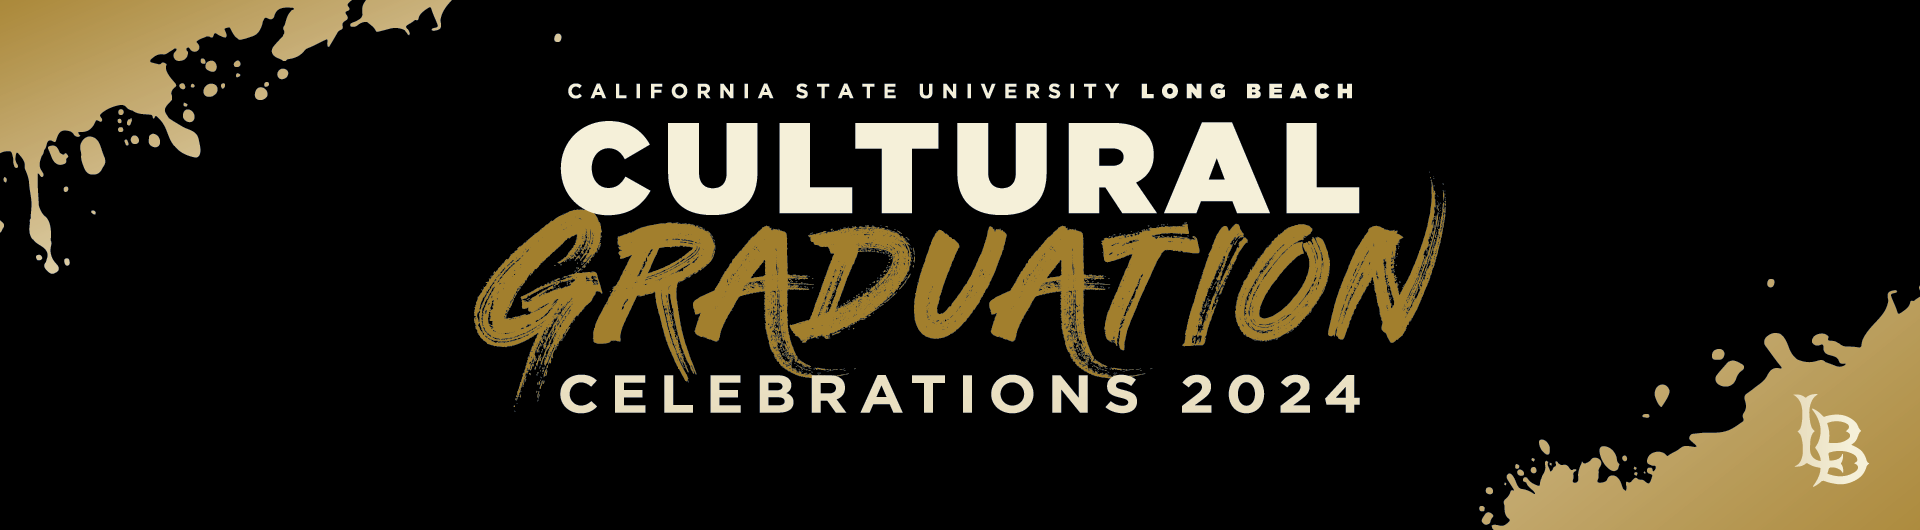 Cultural Graduation Celebrations